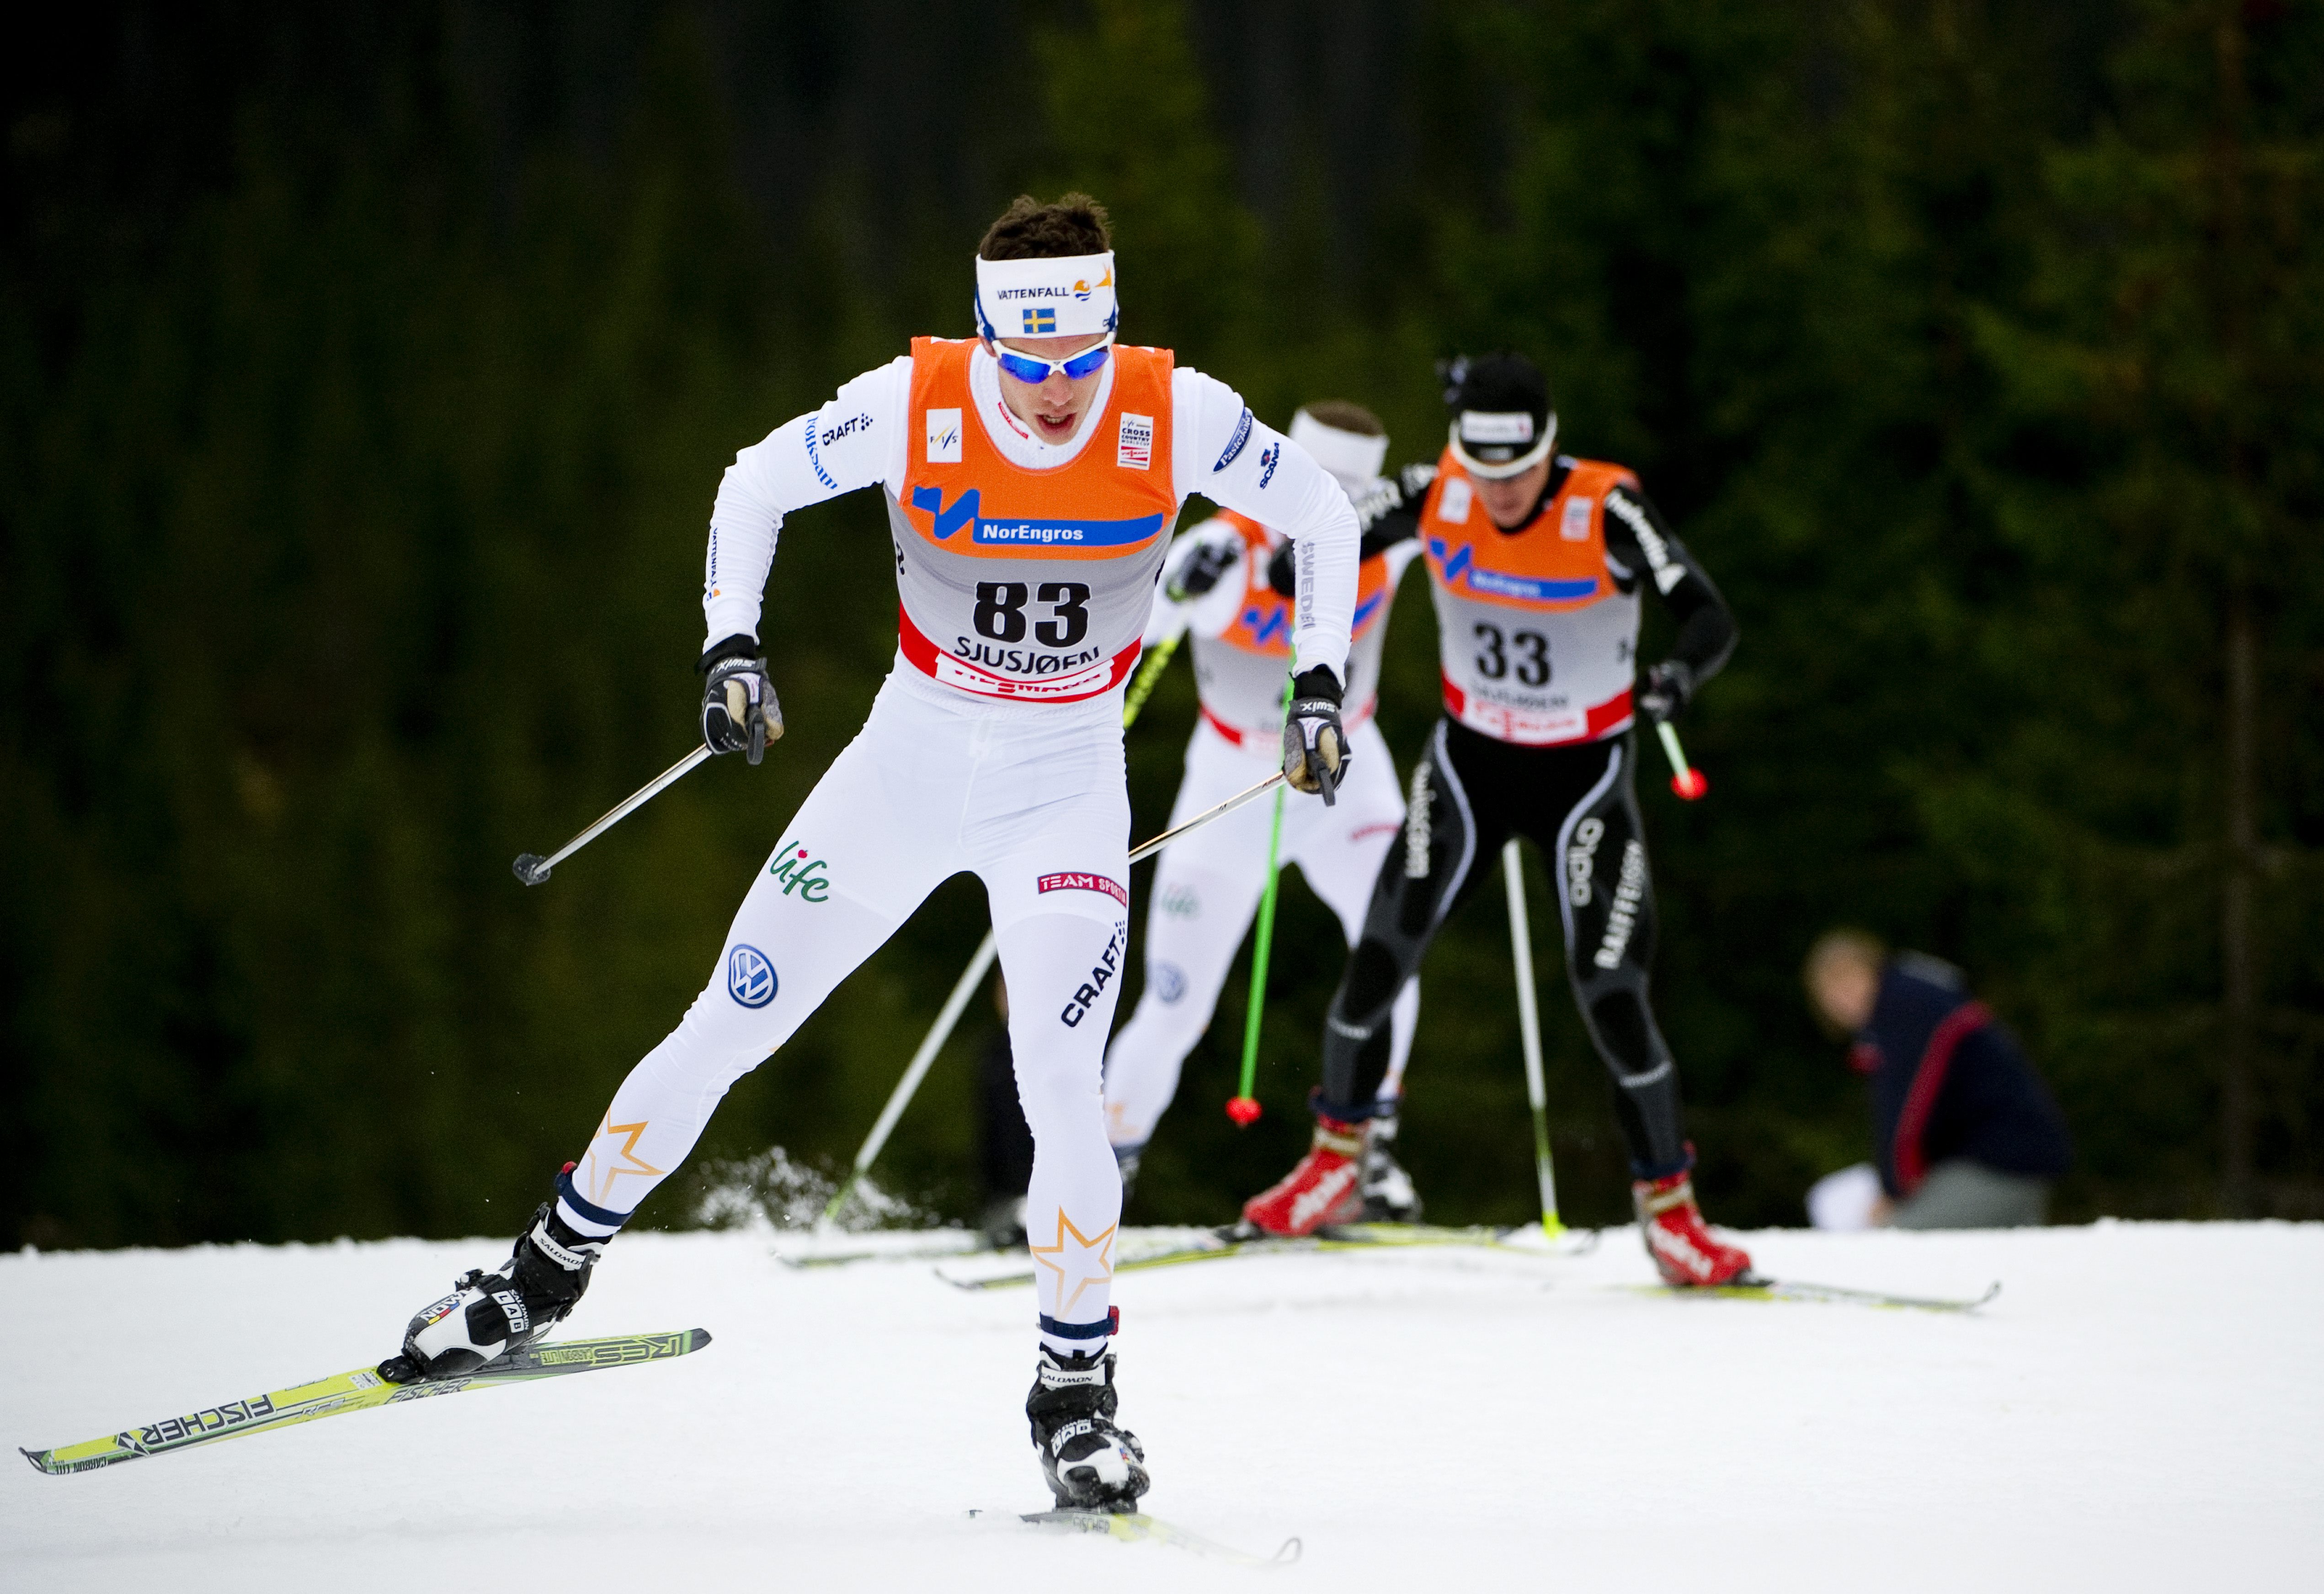 Marcus Hellner, skidor, Johan Olsson, Anna Haag, Charlotte Kalla, Petter Northug